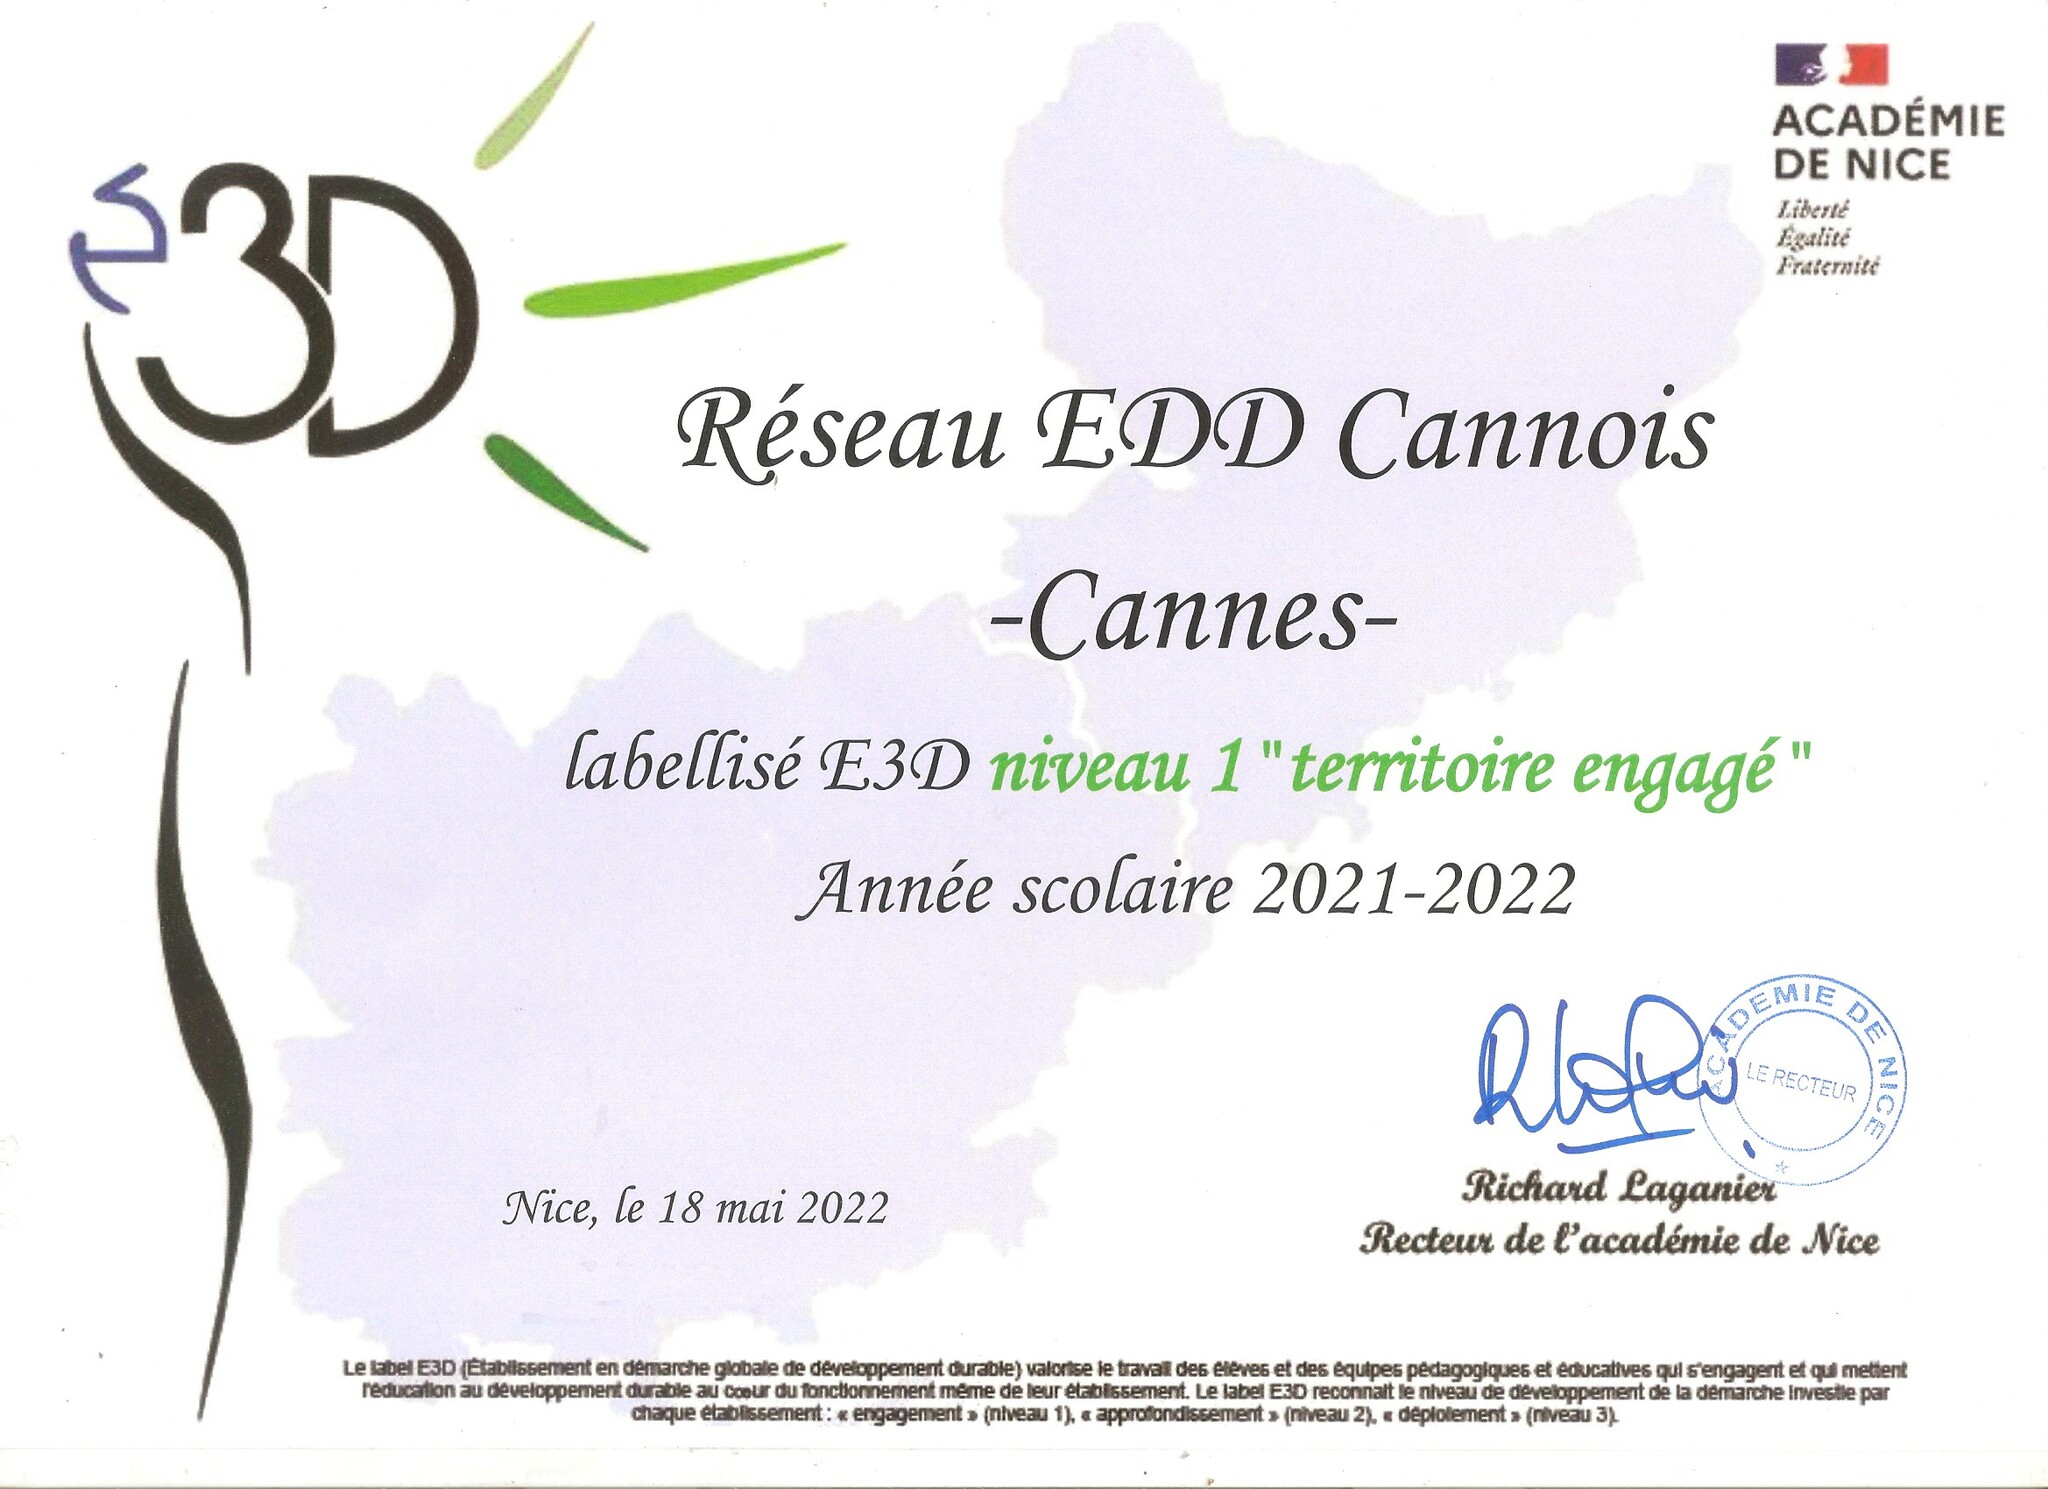 Le lycée fait parti du Réseau EDD Cannois Territoire engagé - Label E3D niveau 1